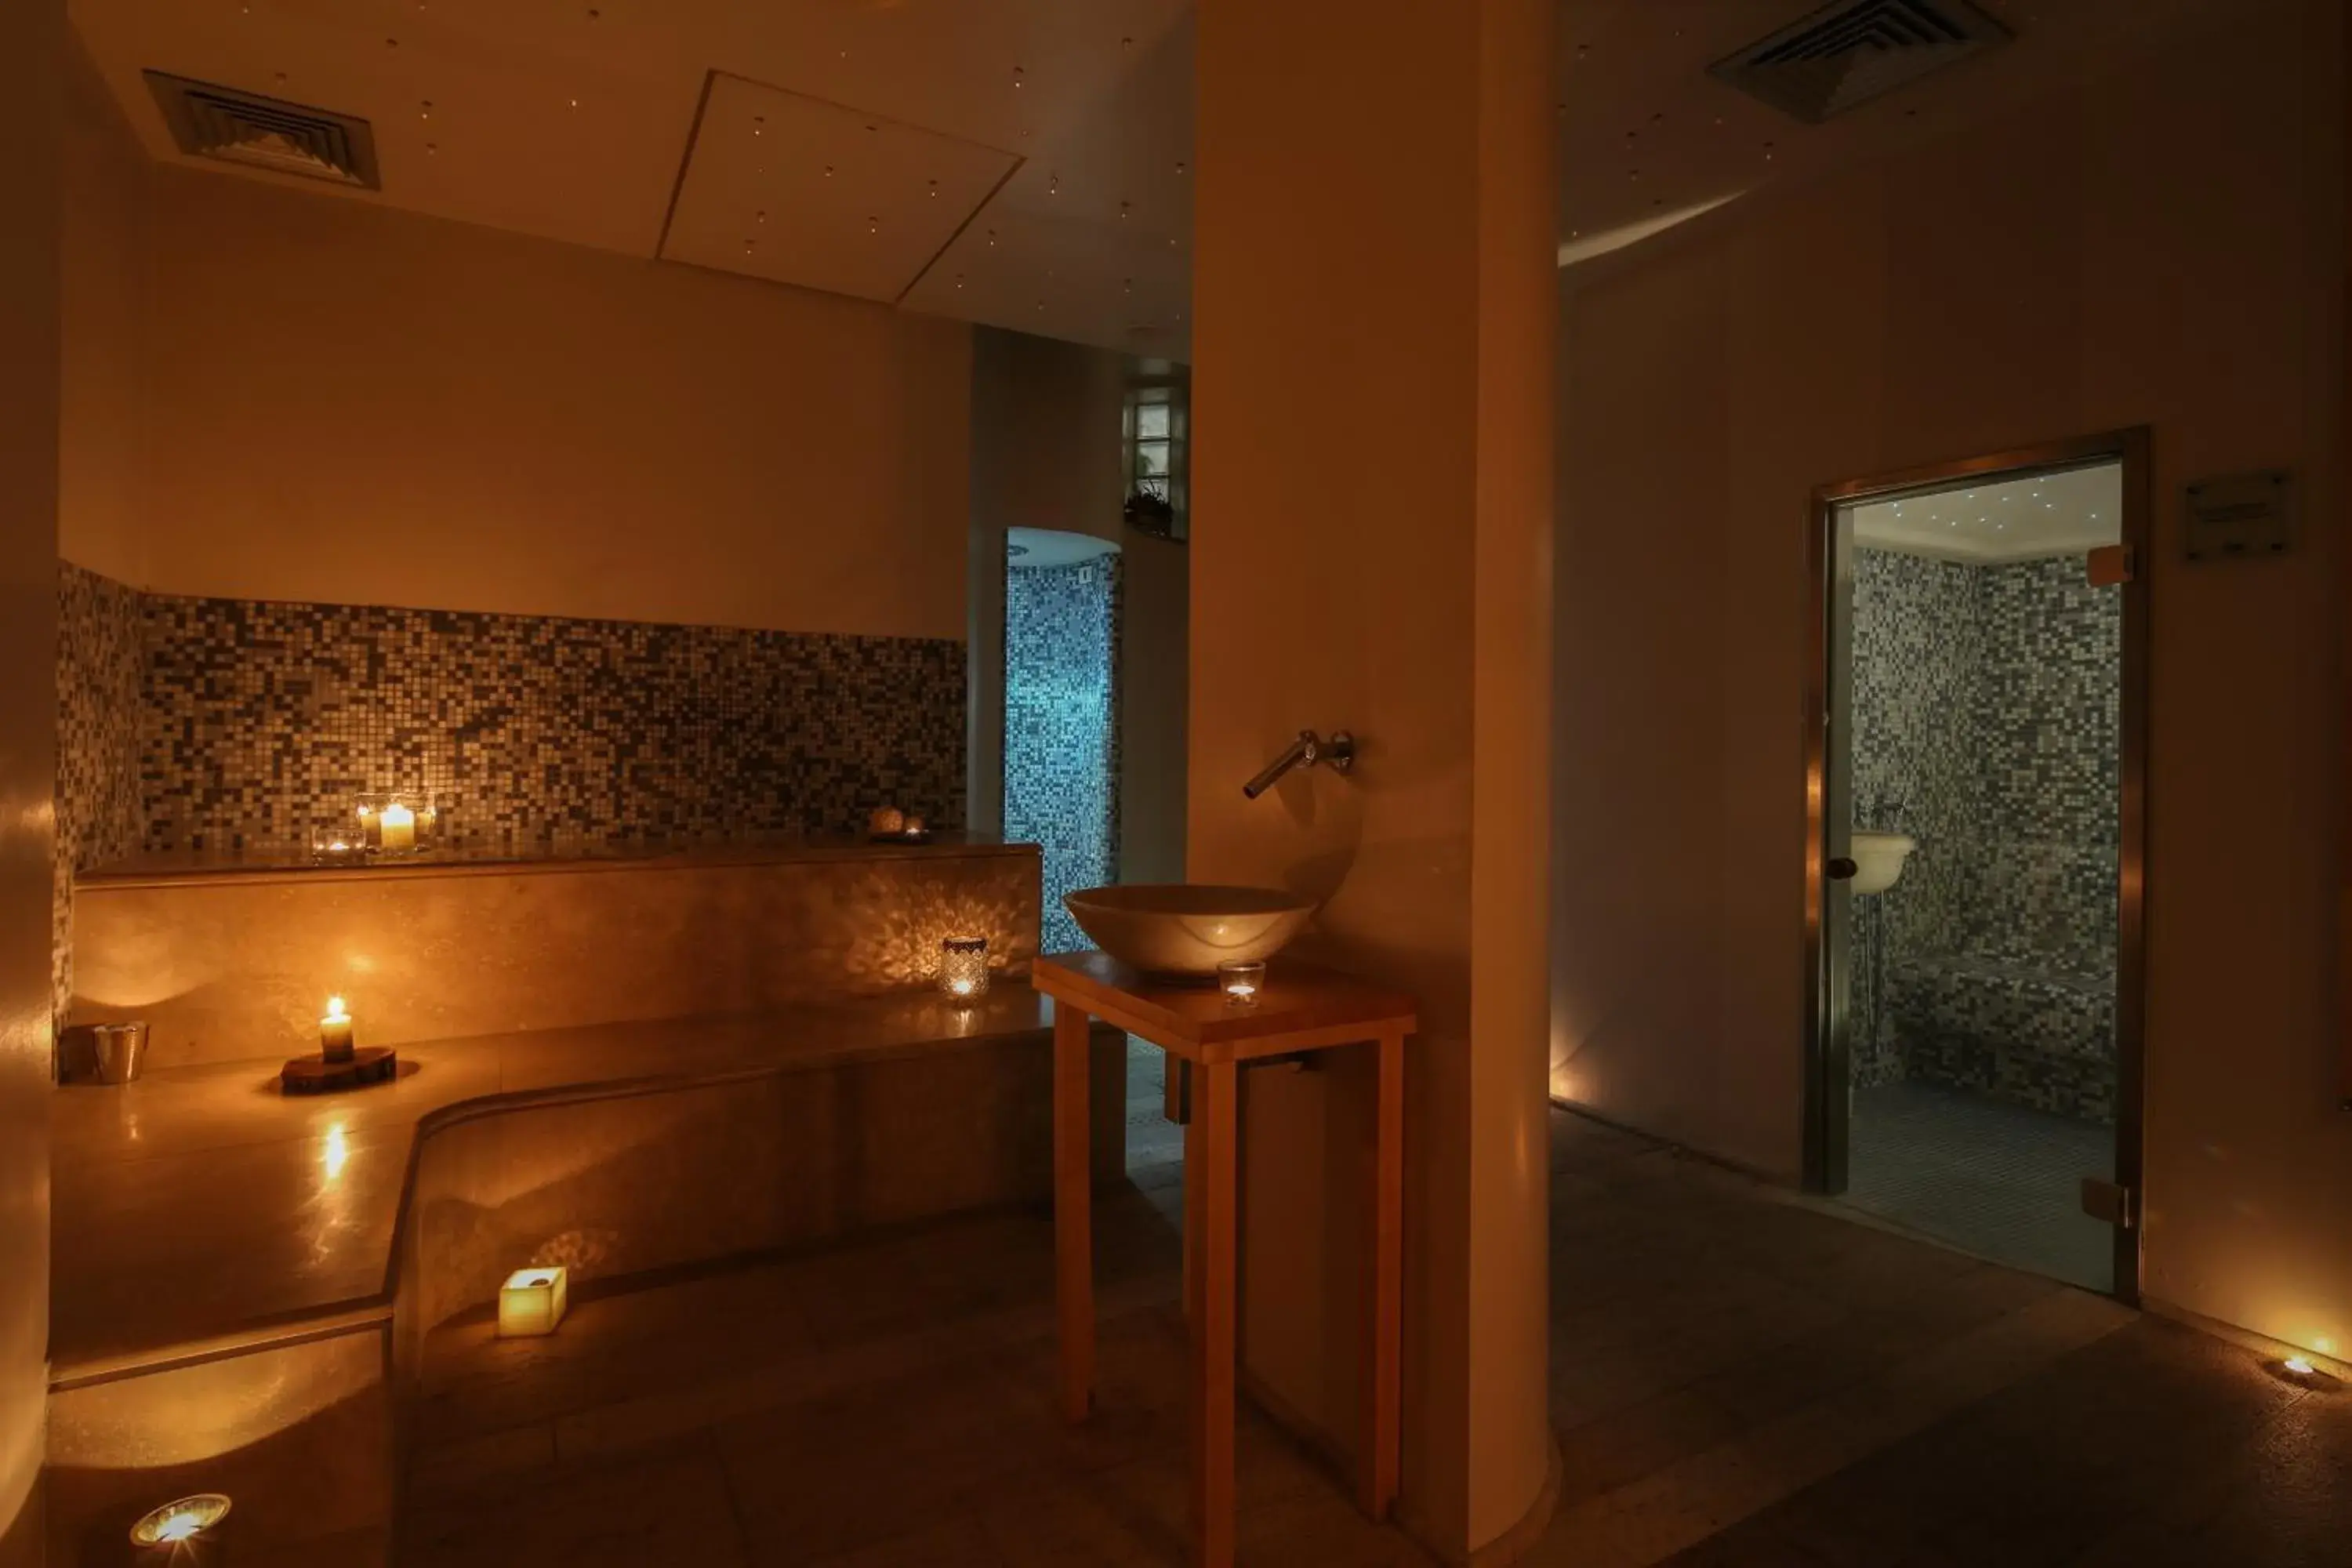 Spa and wellness centre/facilities, Bathroom in Roccafiore Spa & Resort